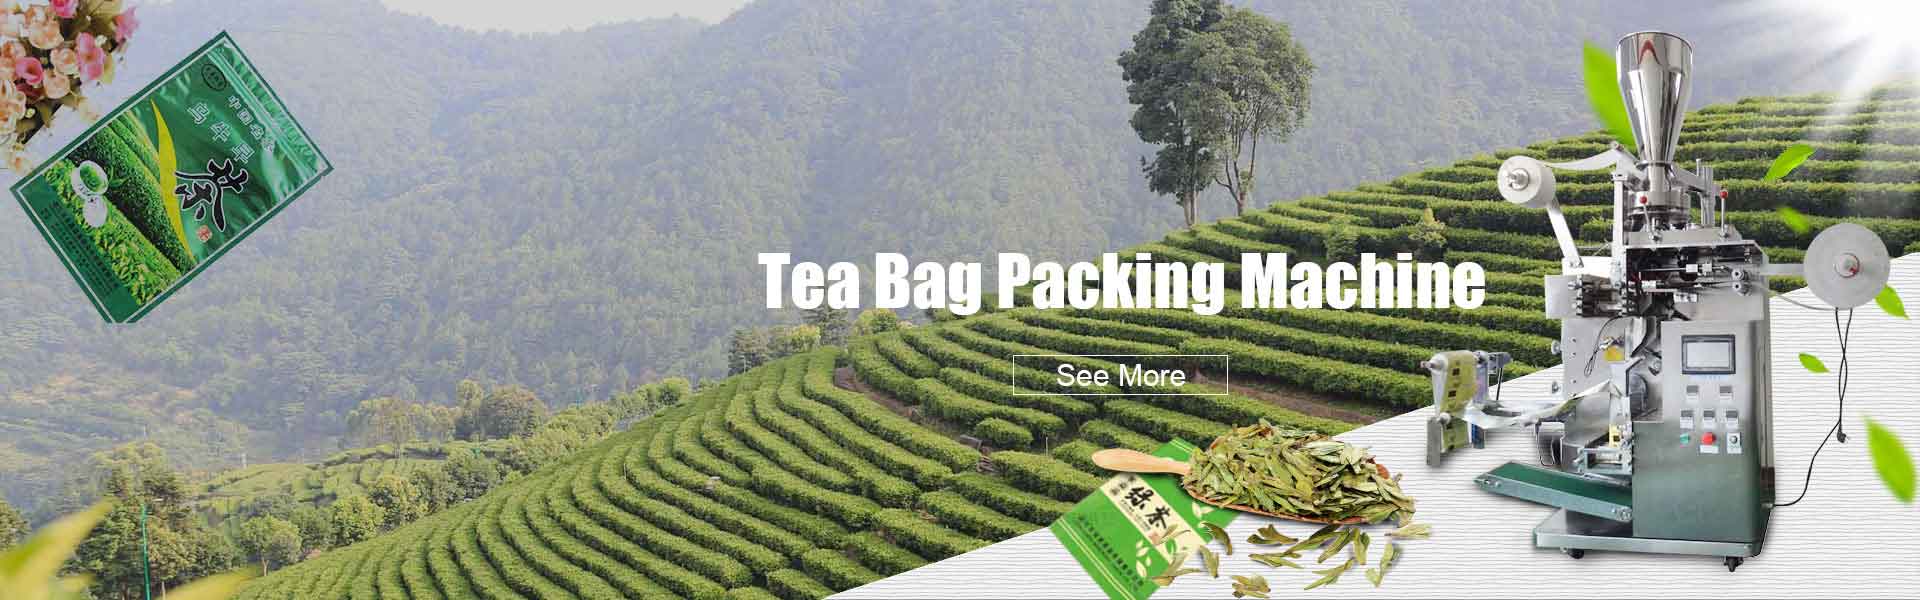 Tea Bag Packing Machine